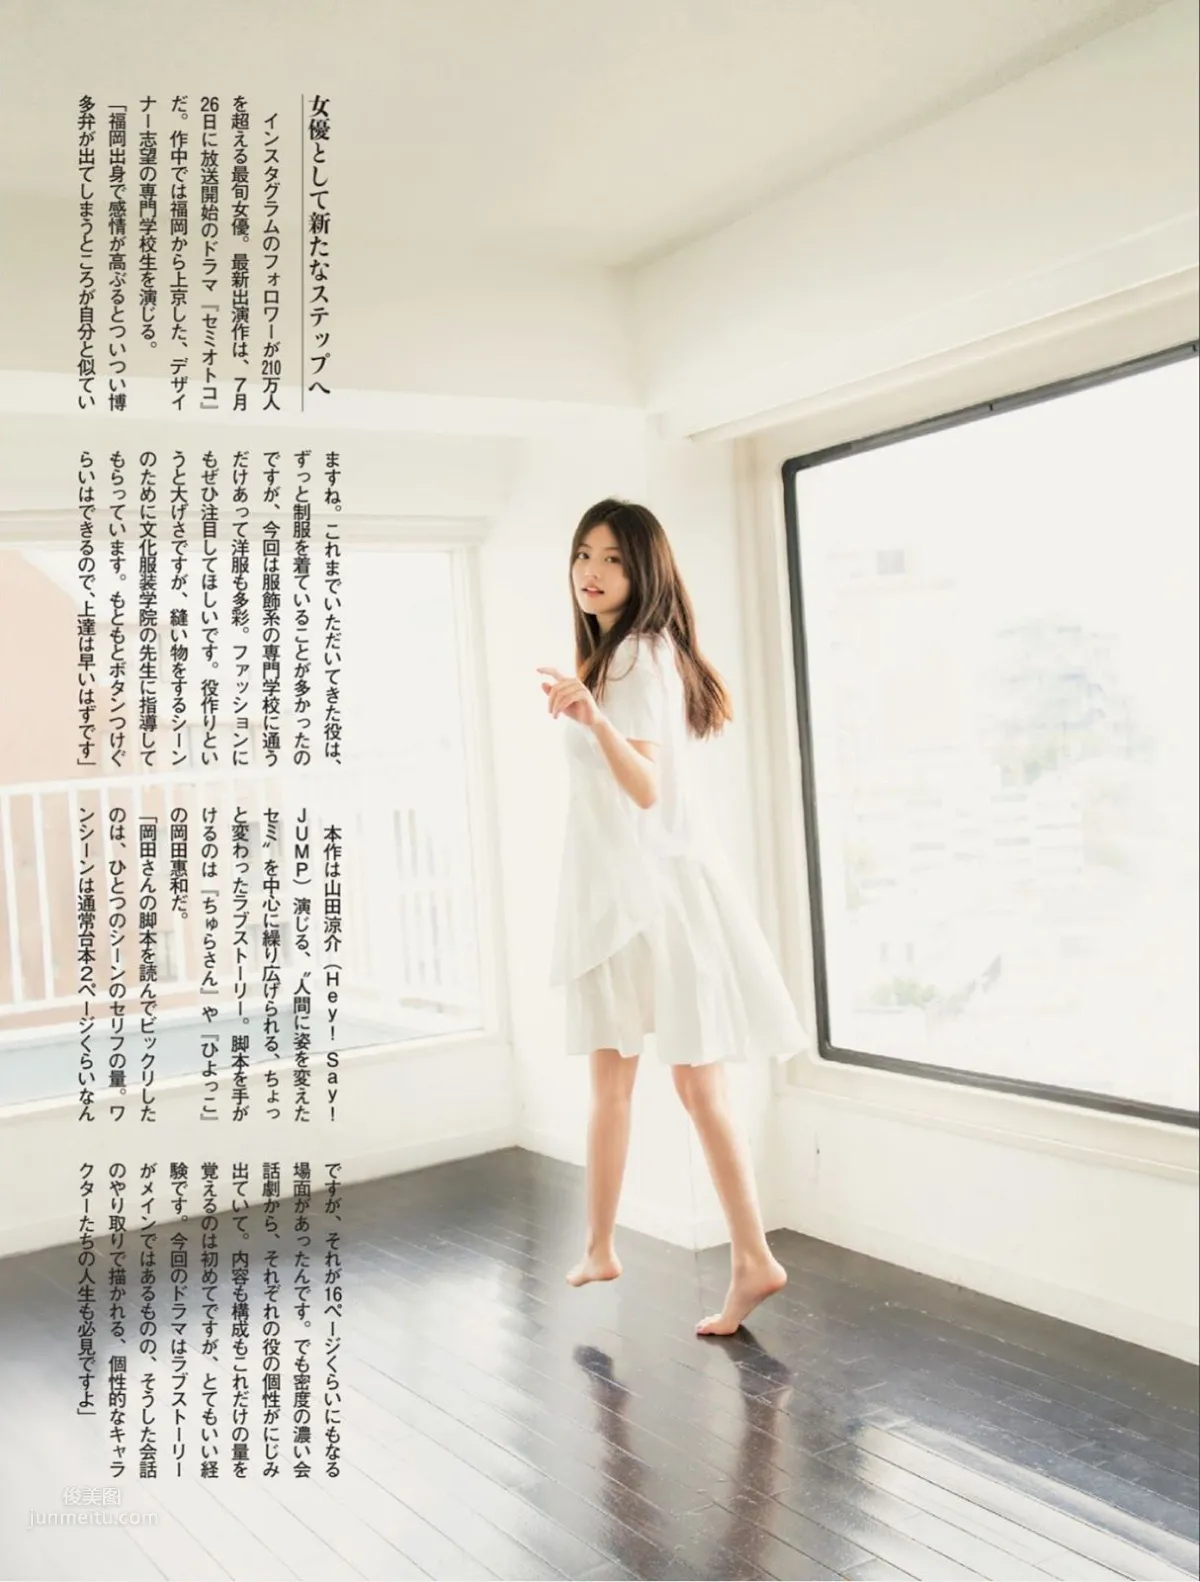 今田美桜, Imada Mio - Weekly Playboy, FLASH, FRIDAY, 2019_41